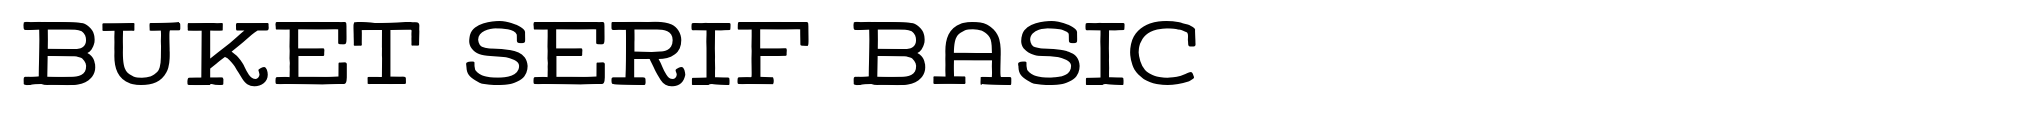 Buket Serif Basic image